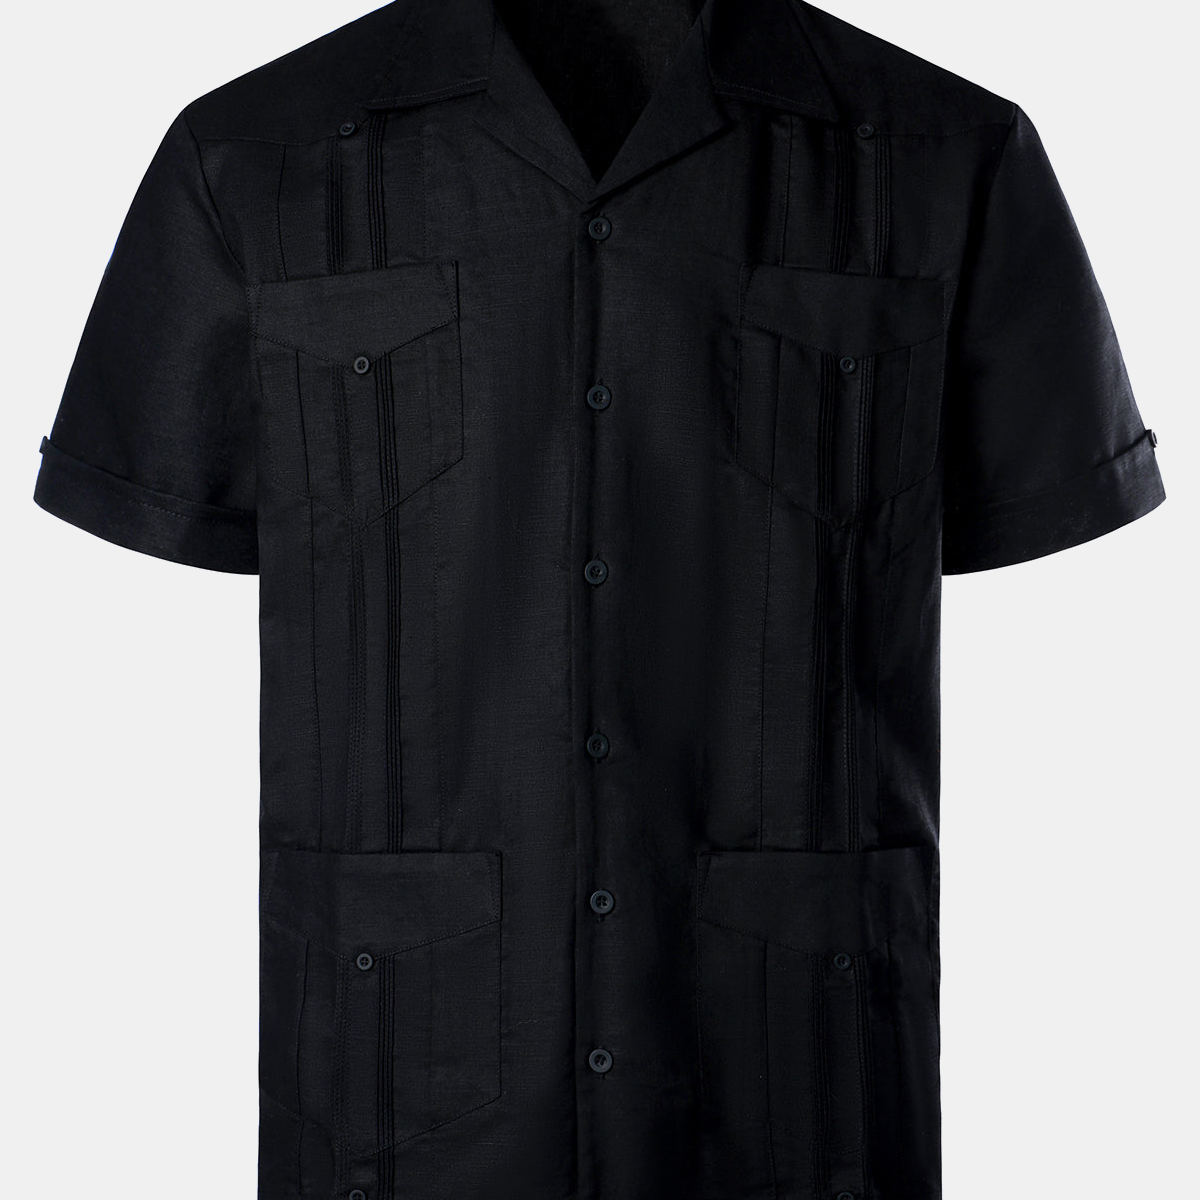 Men’s Linen Cuban Guayabera Casual Button Up Short Sleeve Summer Shirt